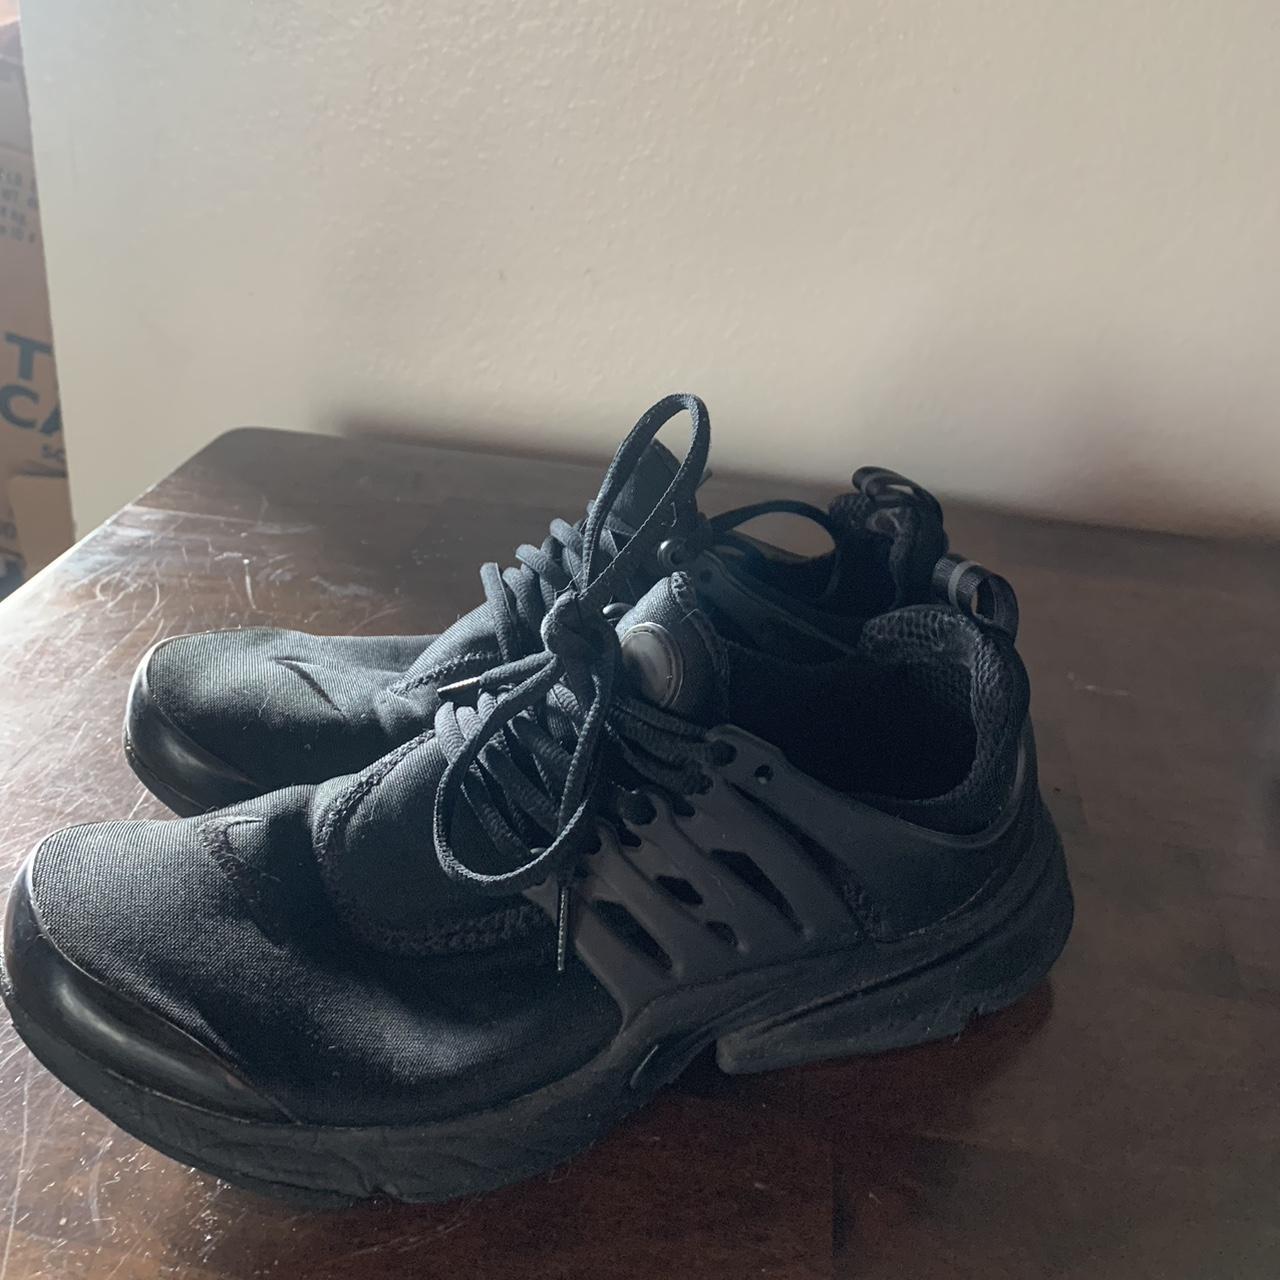 Nike Men's Air Presto Shoes in Black, Size: 9 | FJ0688-010